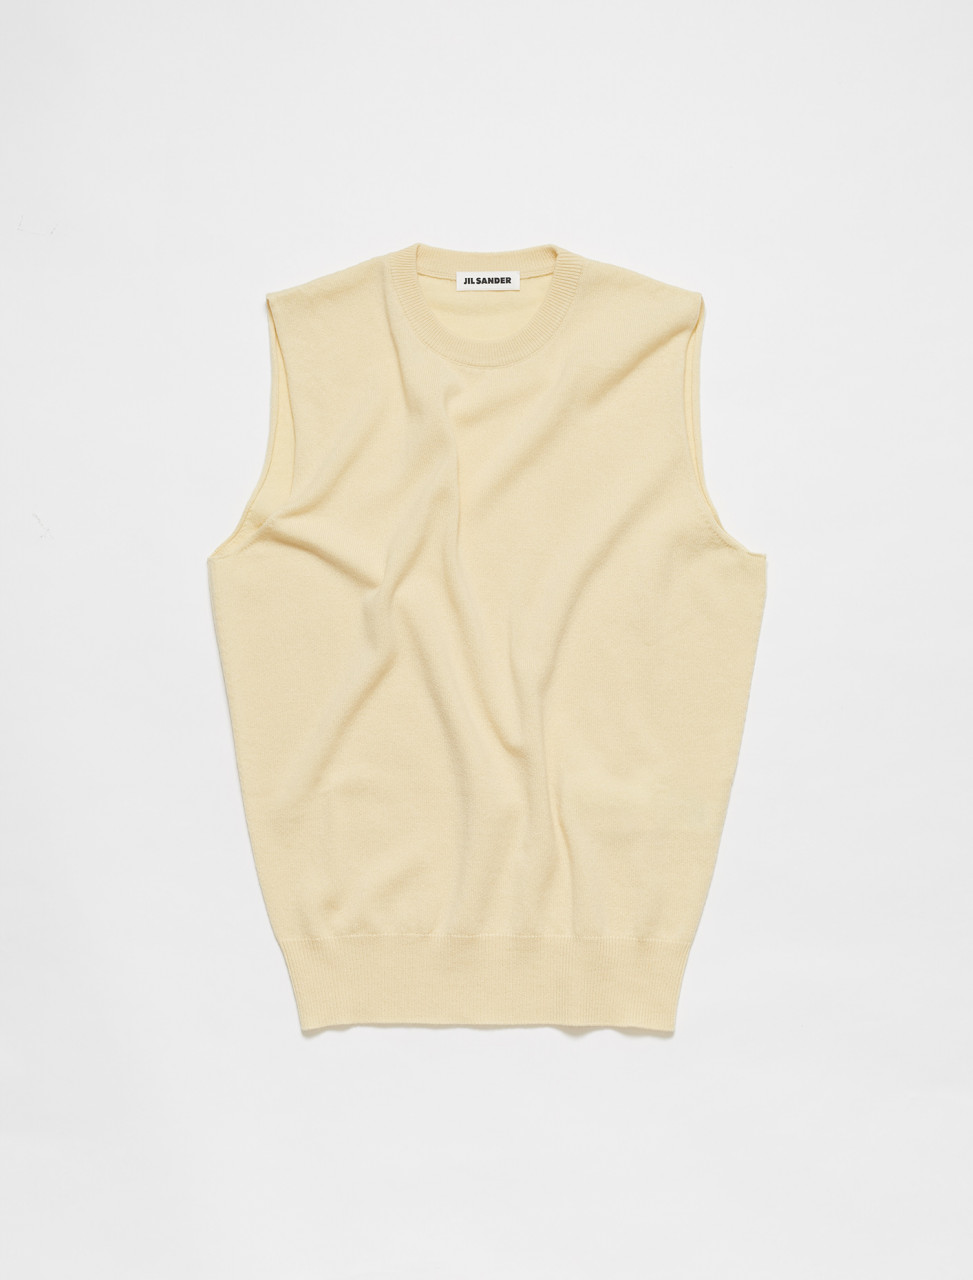 Jil Sander Knitted Vest in Medium Beige | Voo Store Berlin | Worldwide